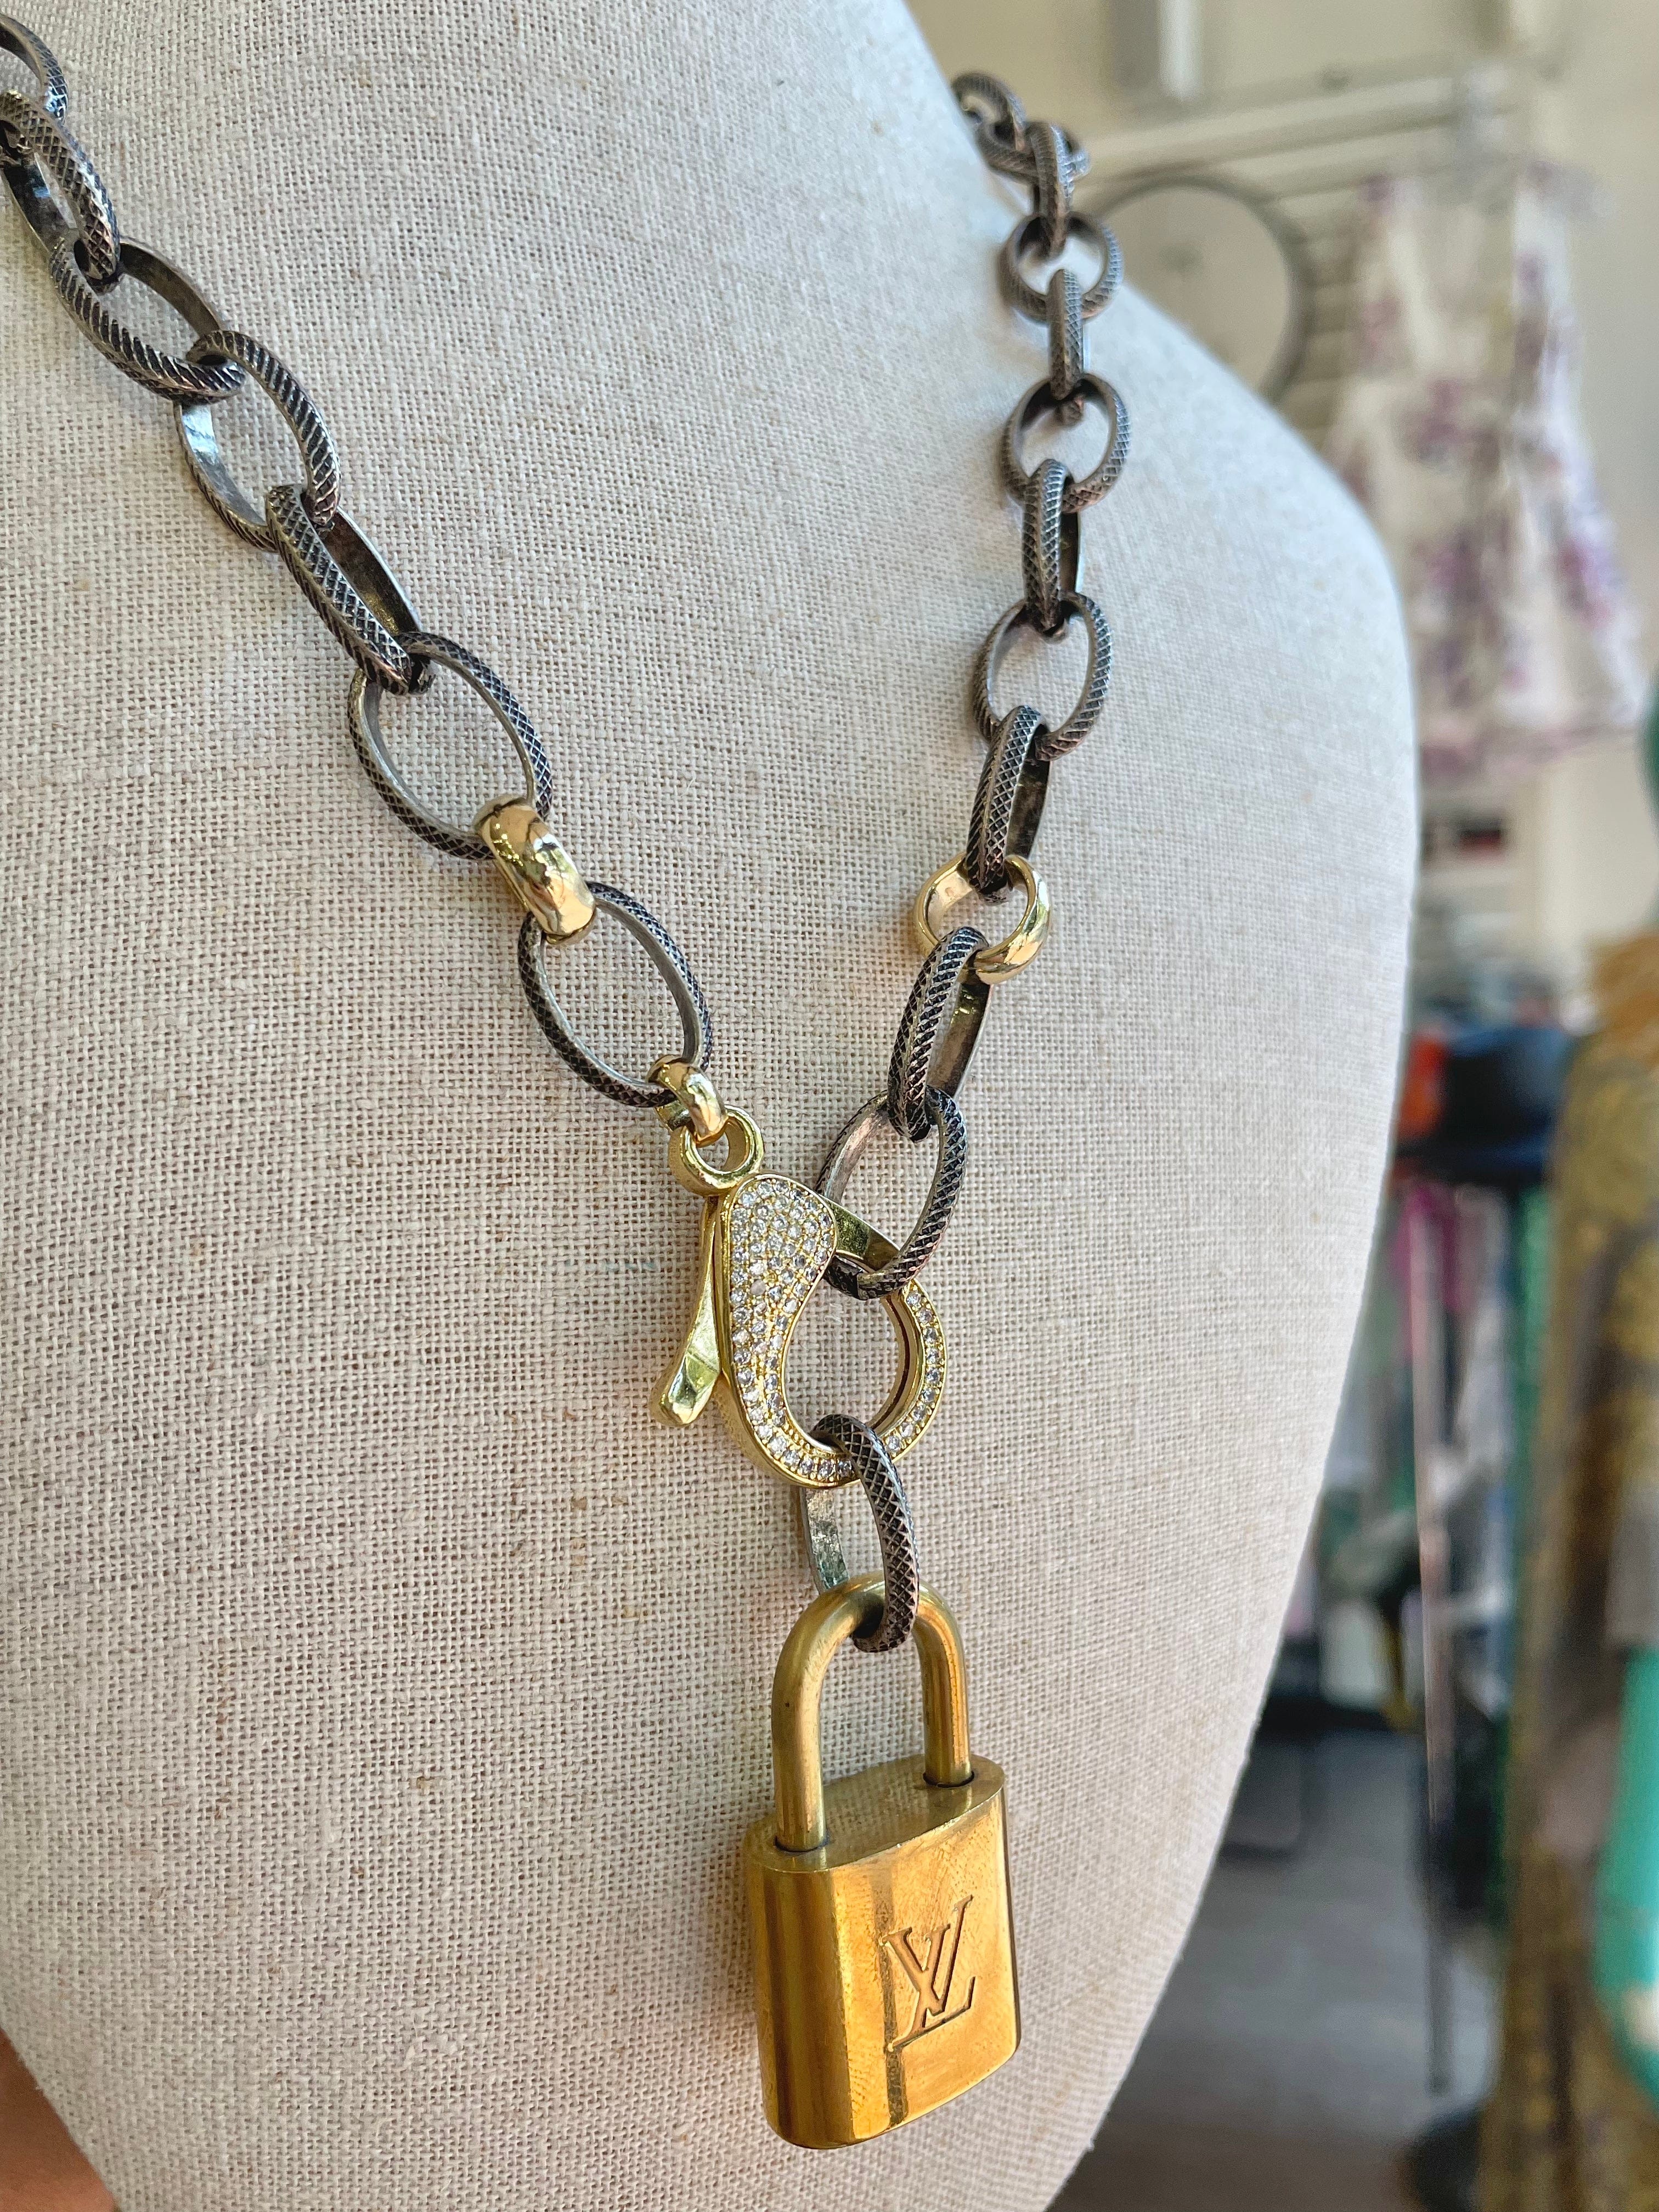 Louis Vuitton Style Fleur Key Pendant Necklace